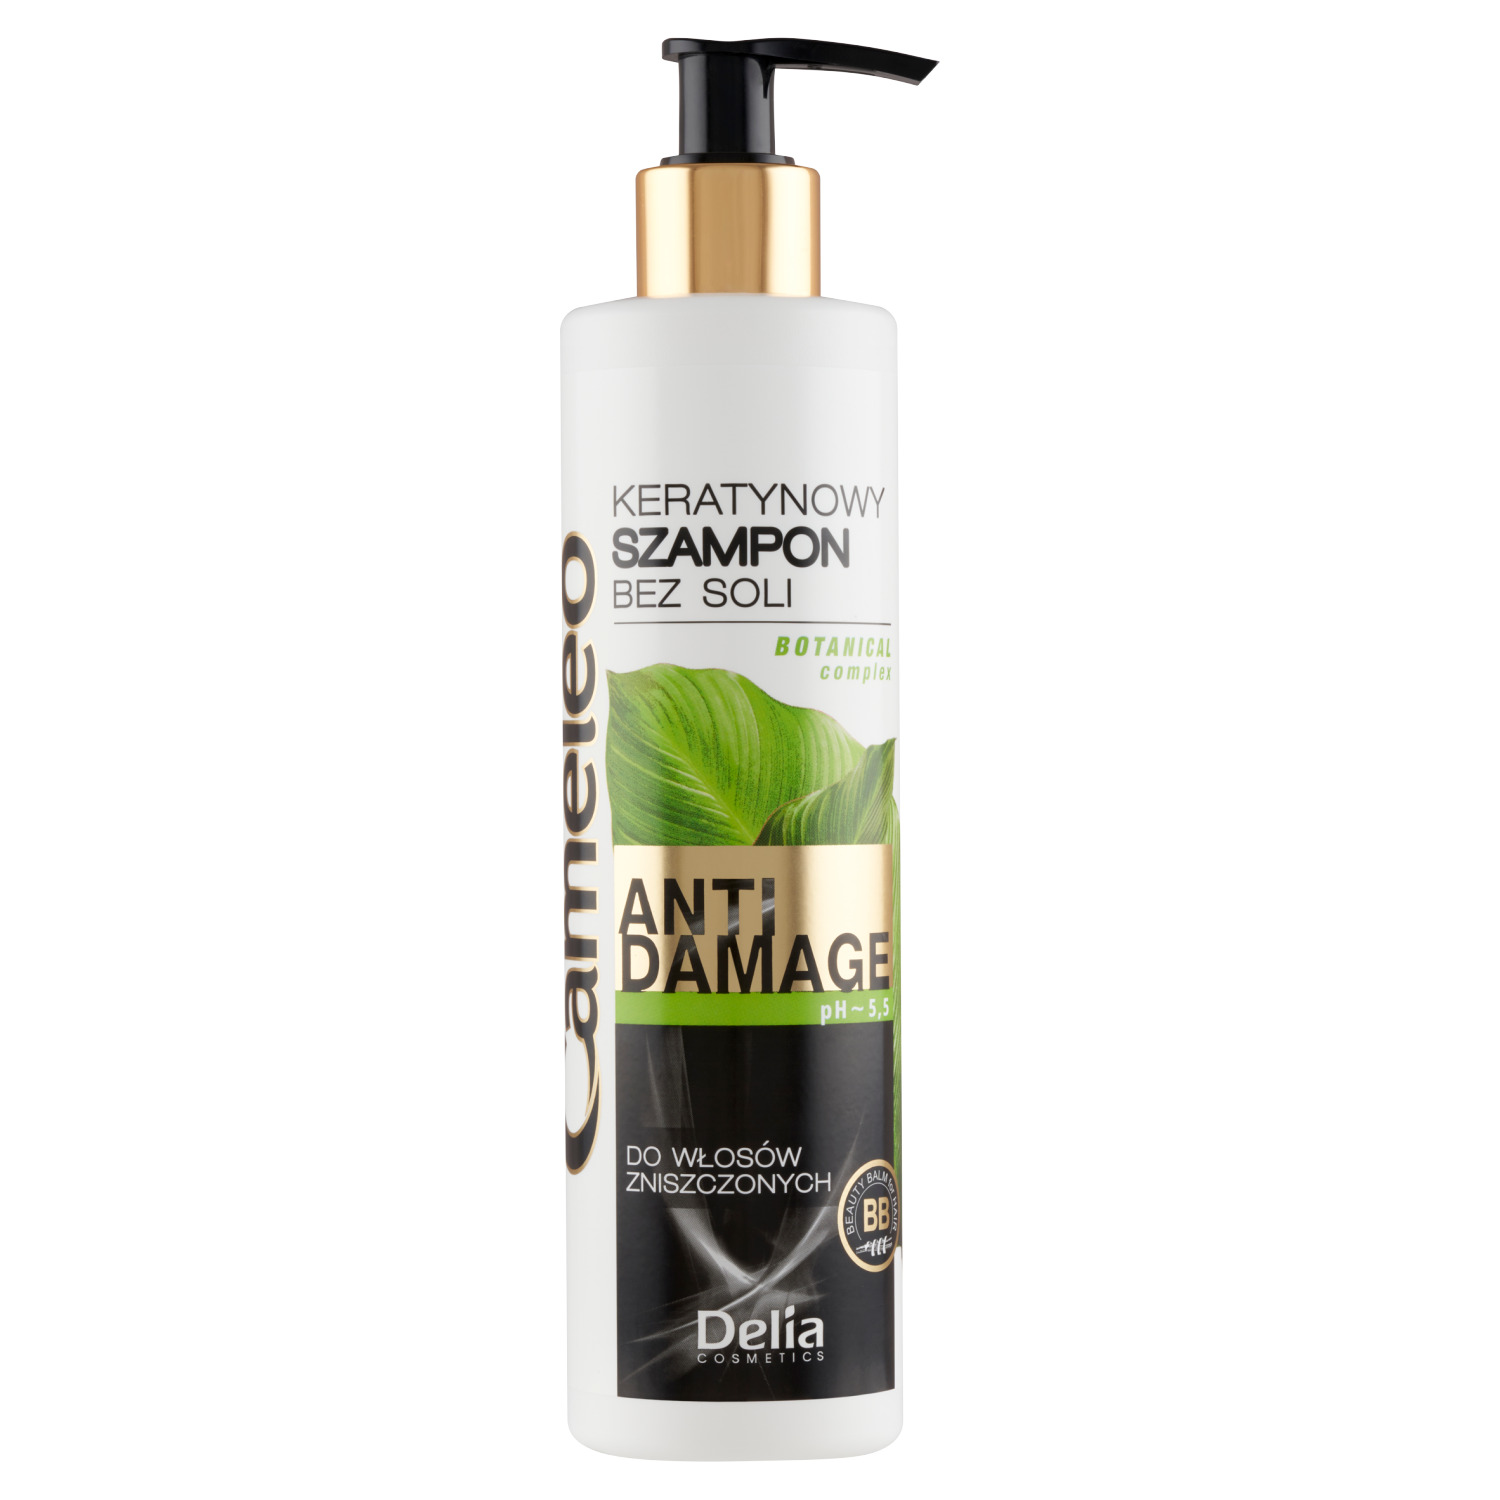 delia cameleo szampon keratynowy włosy farbowane